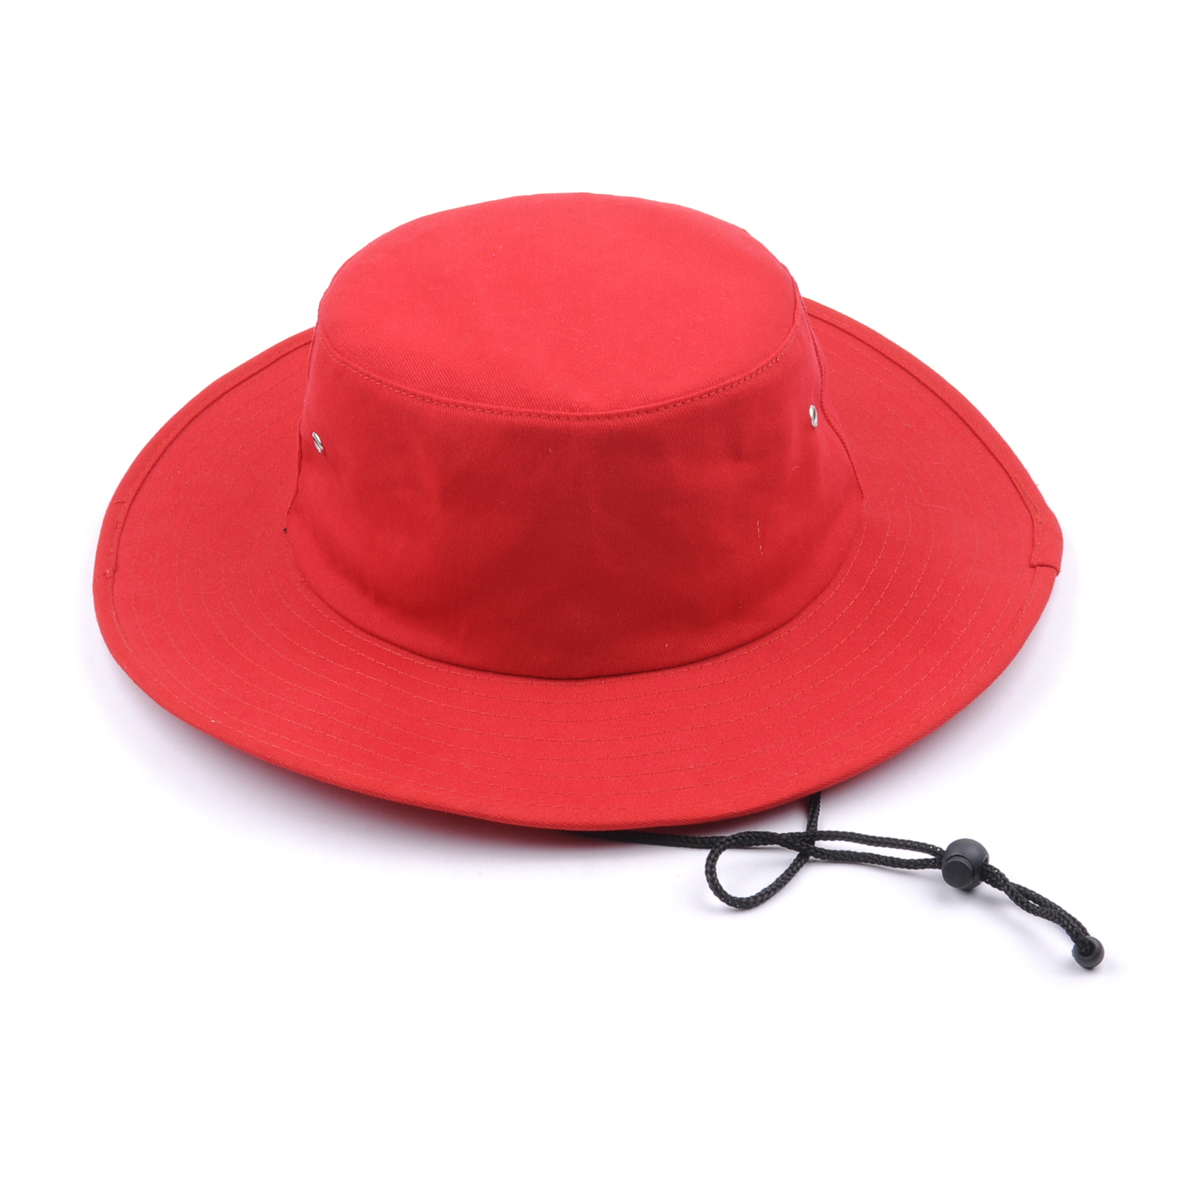 изготовленная на заказ простая красная пустая шляпа ведра трубопровода